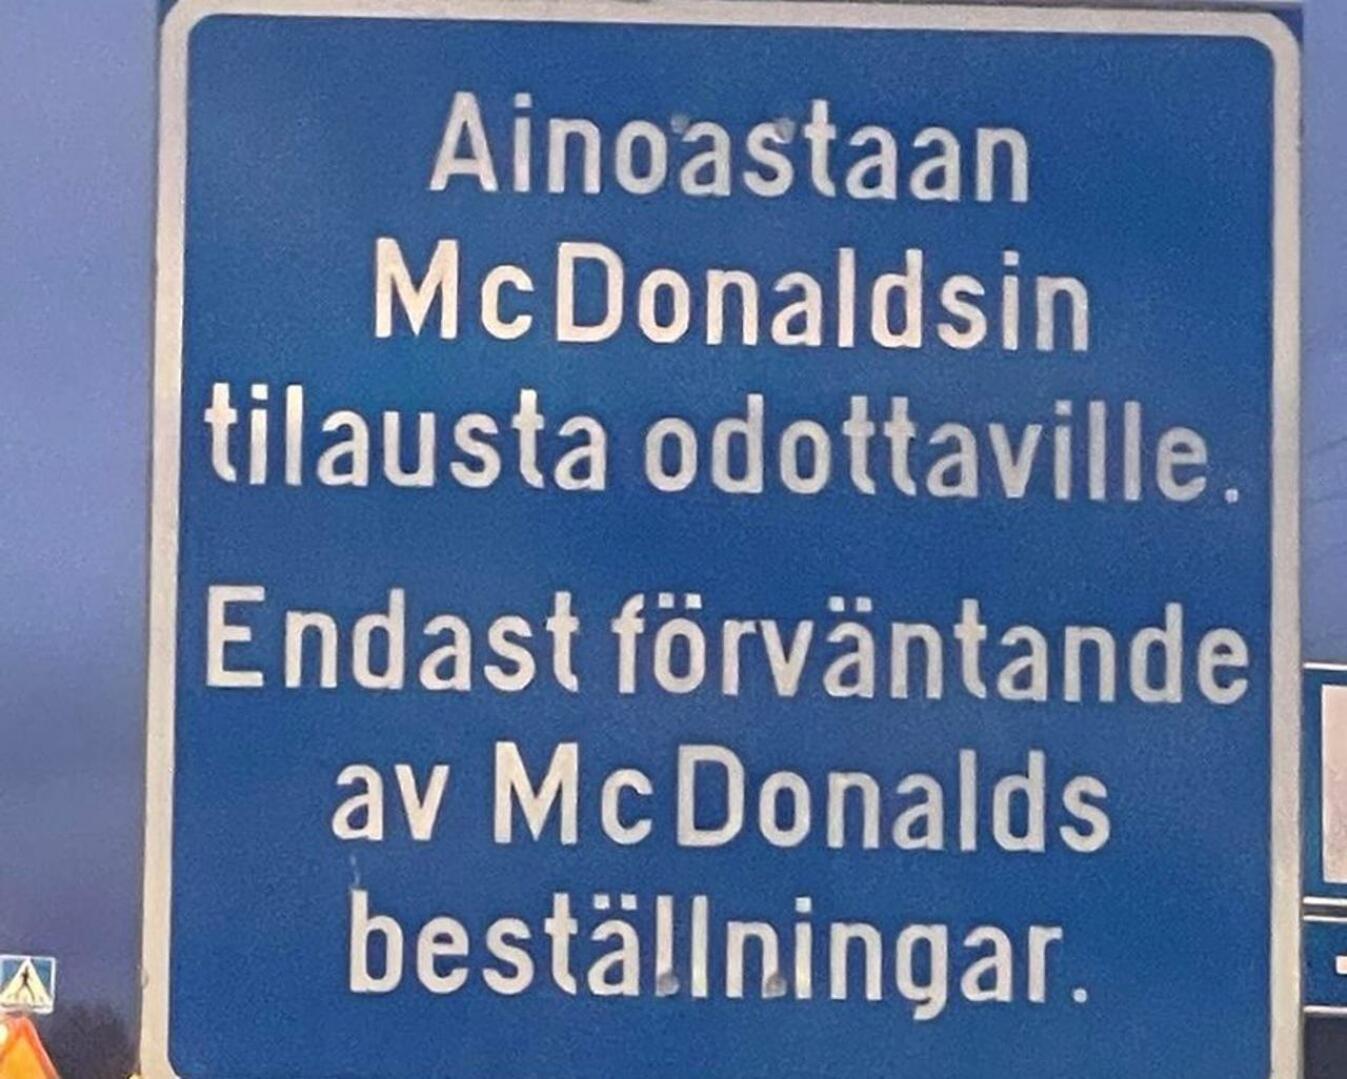 Kokkolan McDonaldsin kyltin ruotsinkielinen teksti kaipaa kielenhuoltoa.